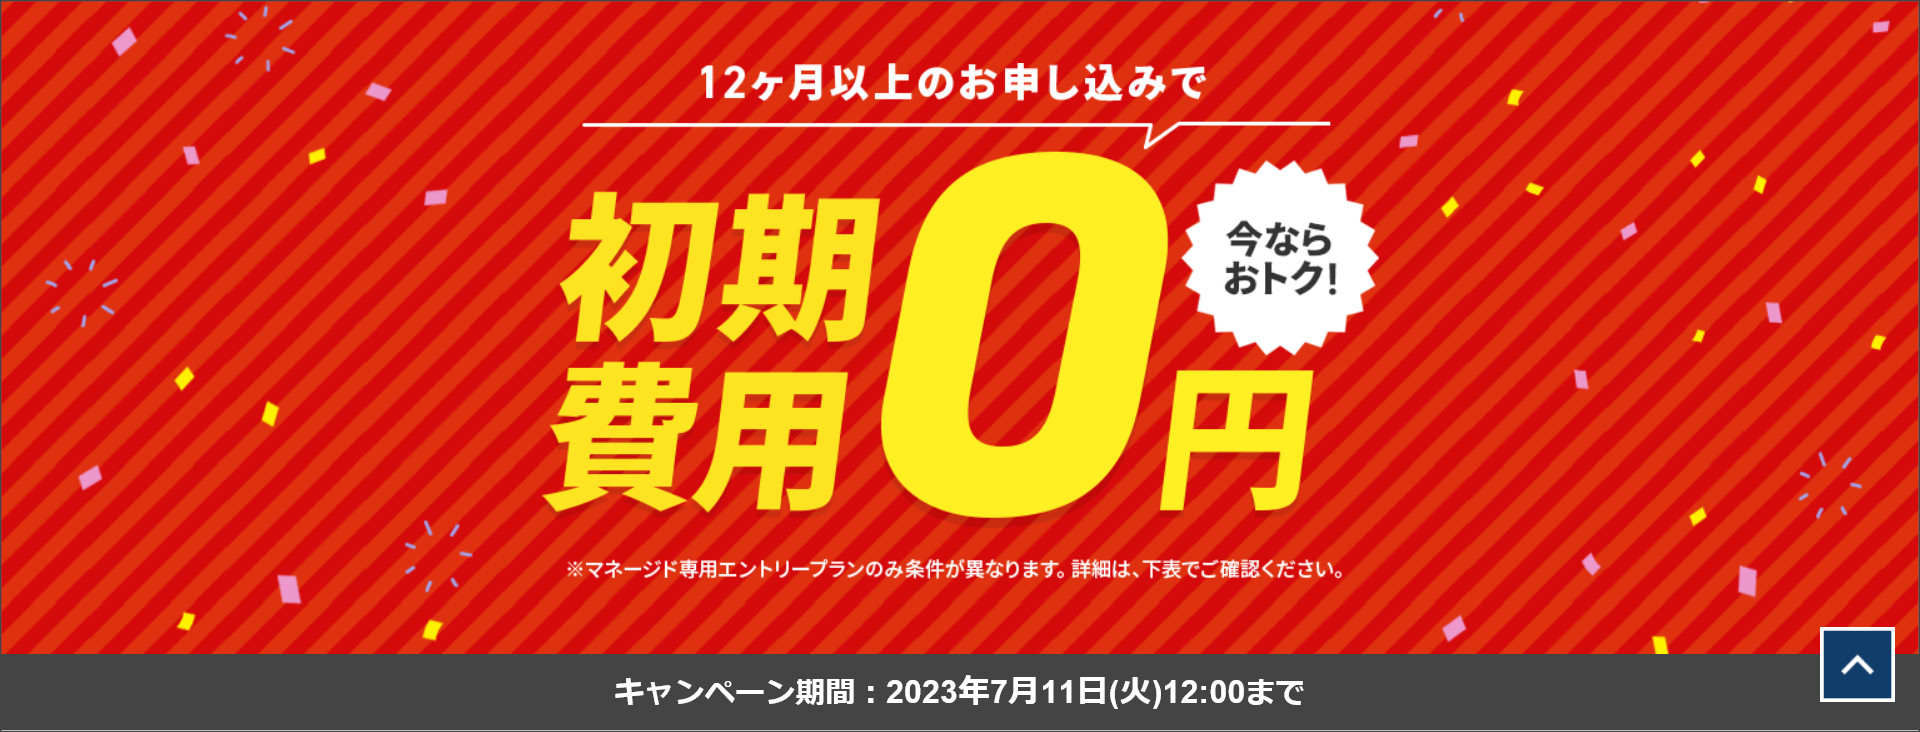 Xserverビジネス初期費用0円キャンペーン